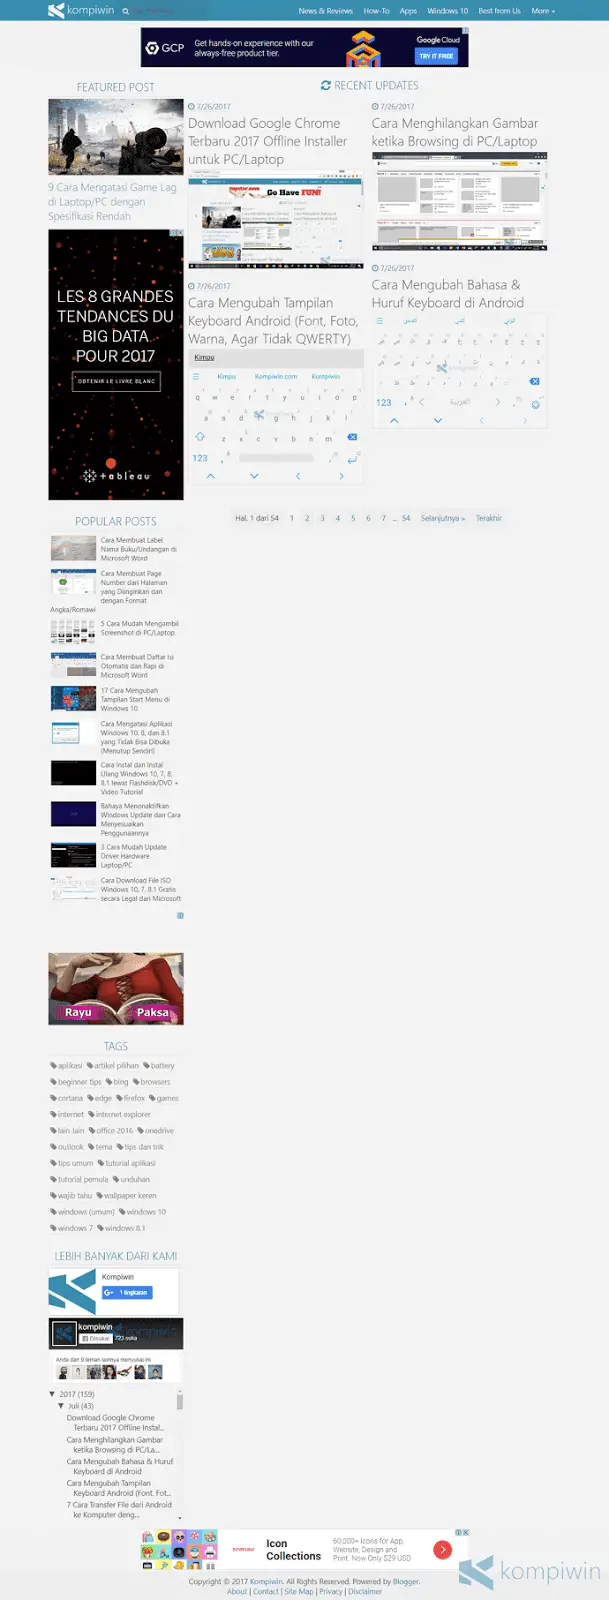 contoh screenshot halaman web dari atas ke bawah